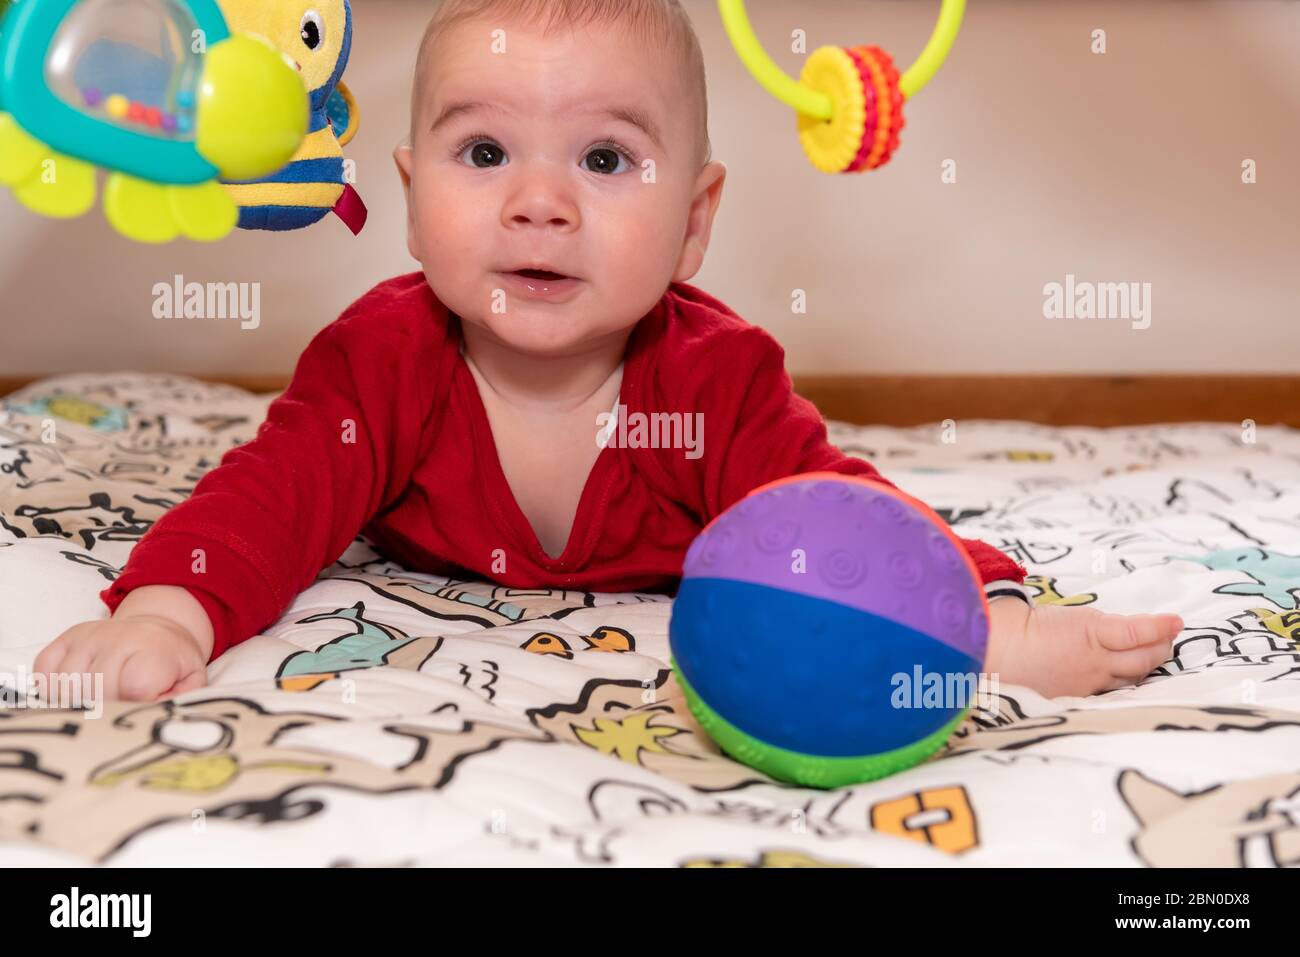 Un petit garçon mignon pendant le ventre, regardant l'appareil photo. enfant de 6 mois avec expression de curiosité sur son visage entouré de jouets colorés. Banque D'Images